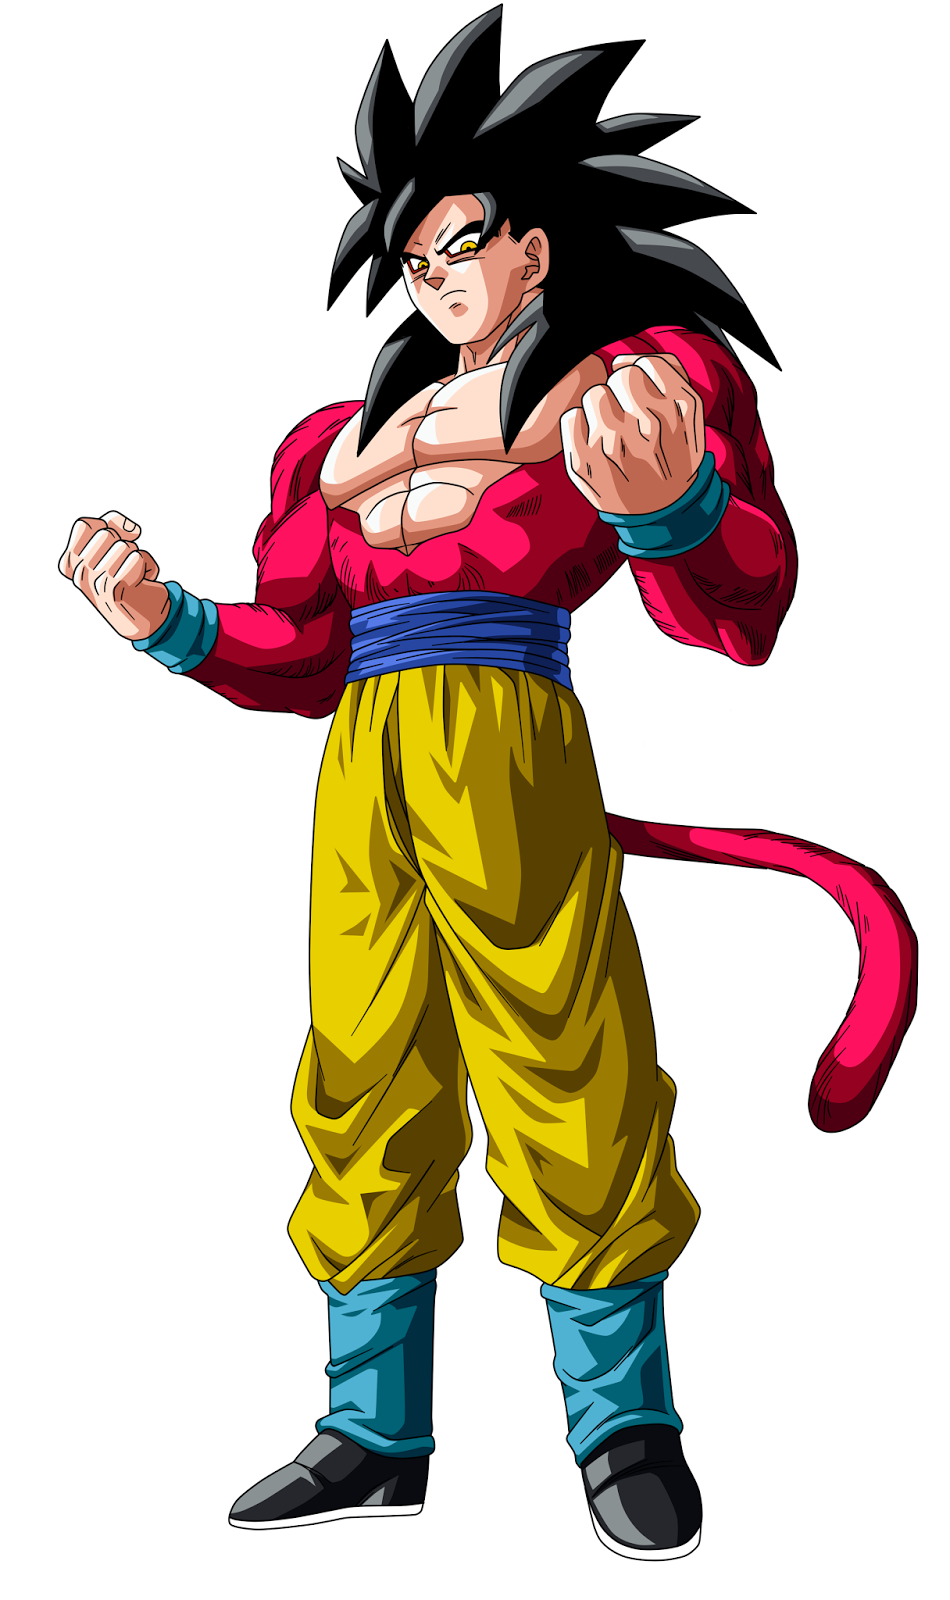 Gambar Goku Super Saiyan 1 2 3 4 5 Terbaru | Terbaru 2021